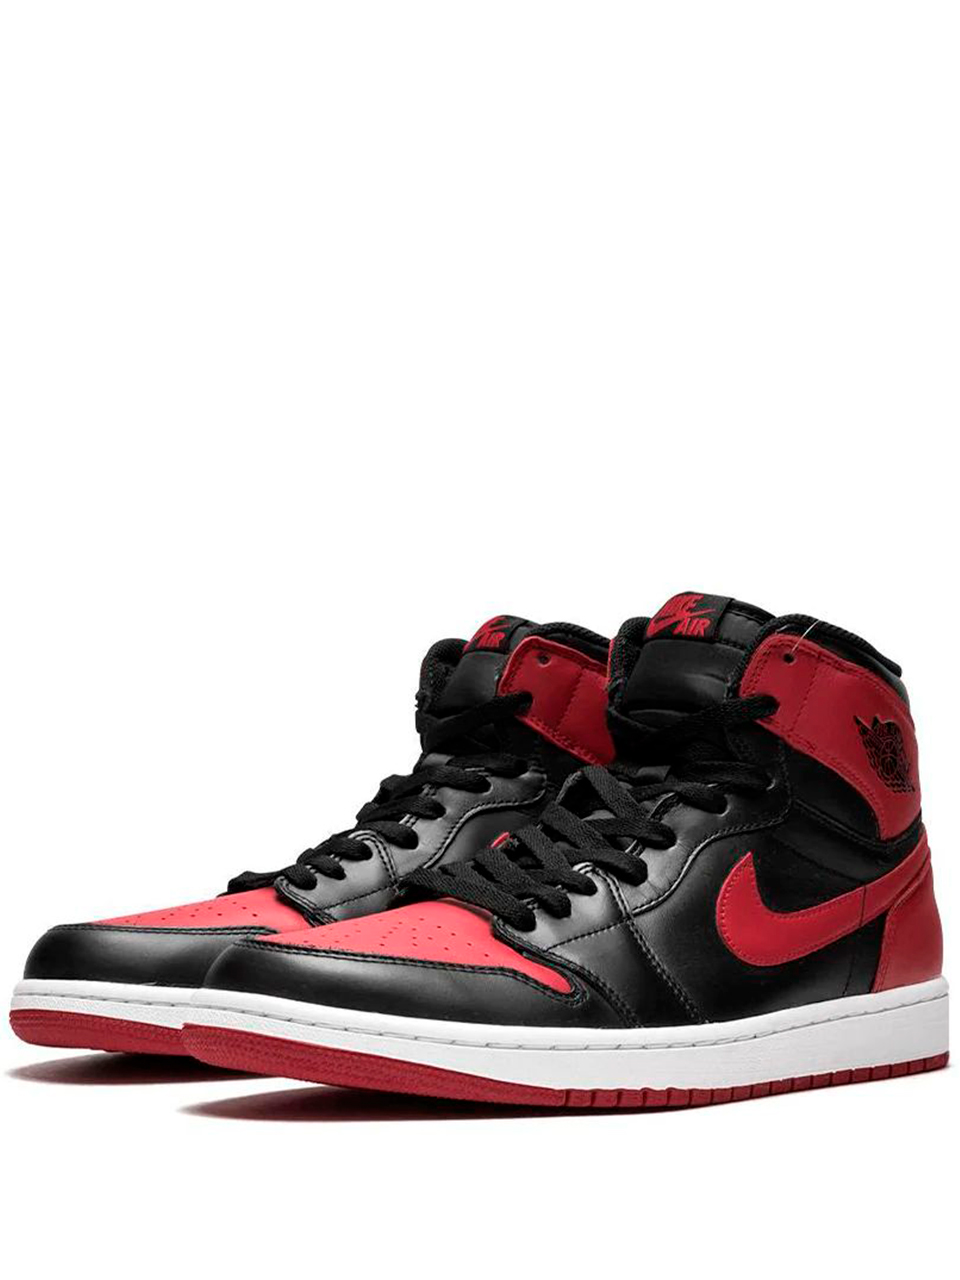 Imagem de: Tênis Nike Air Jordan 1 Vermelho e Preto